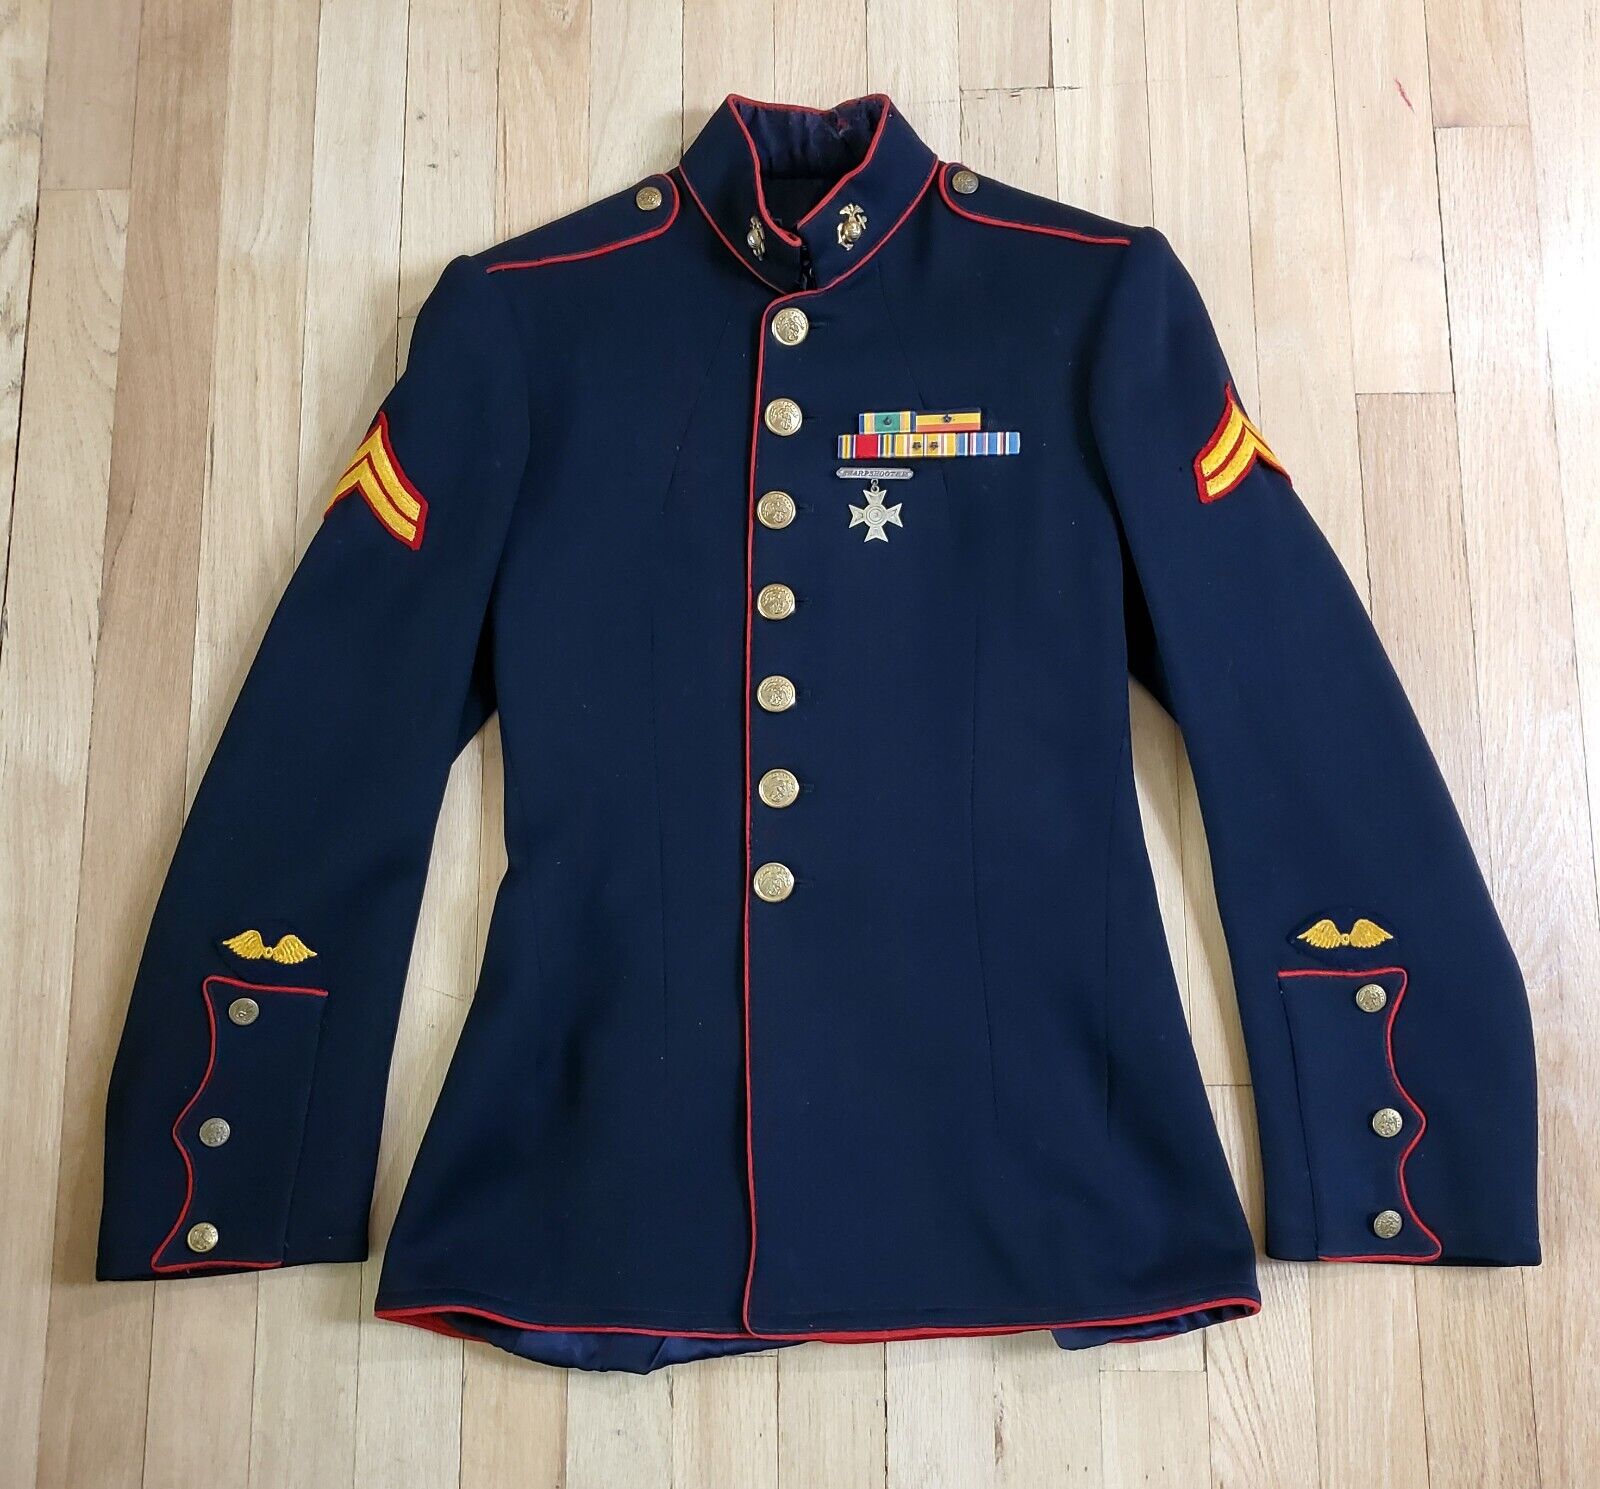 USMC WW2 Aviation Marine Corps Dress Blue Jacket.